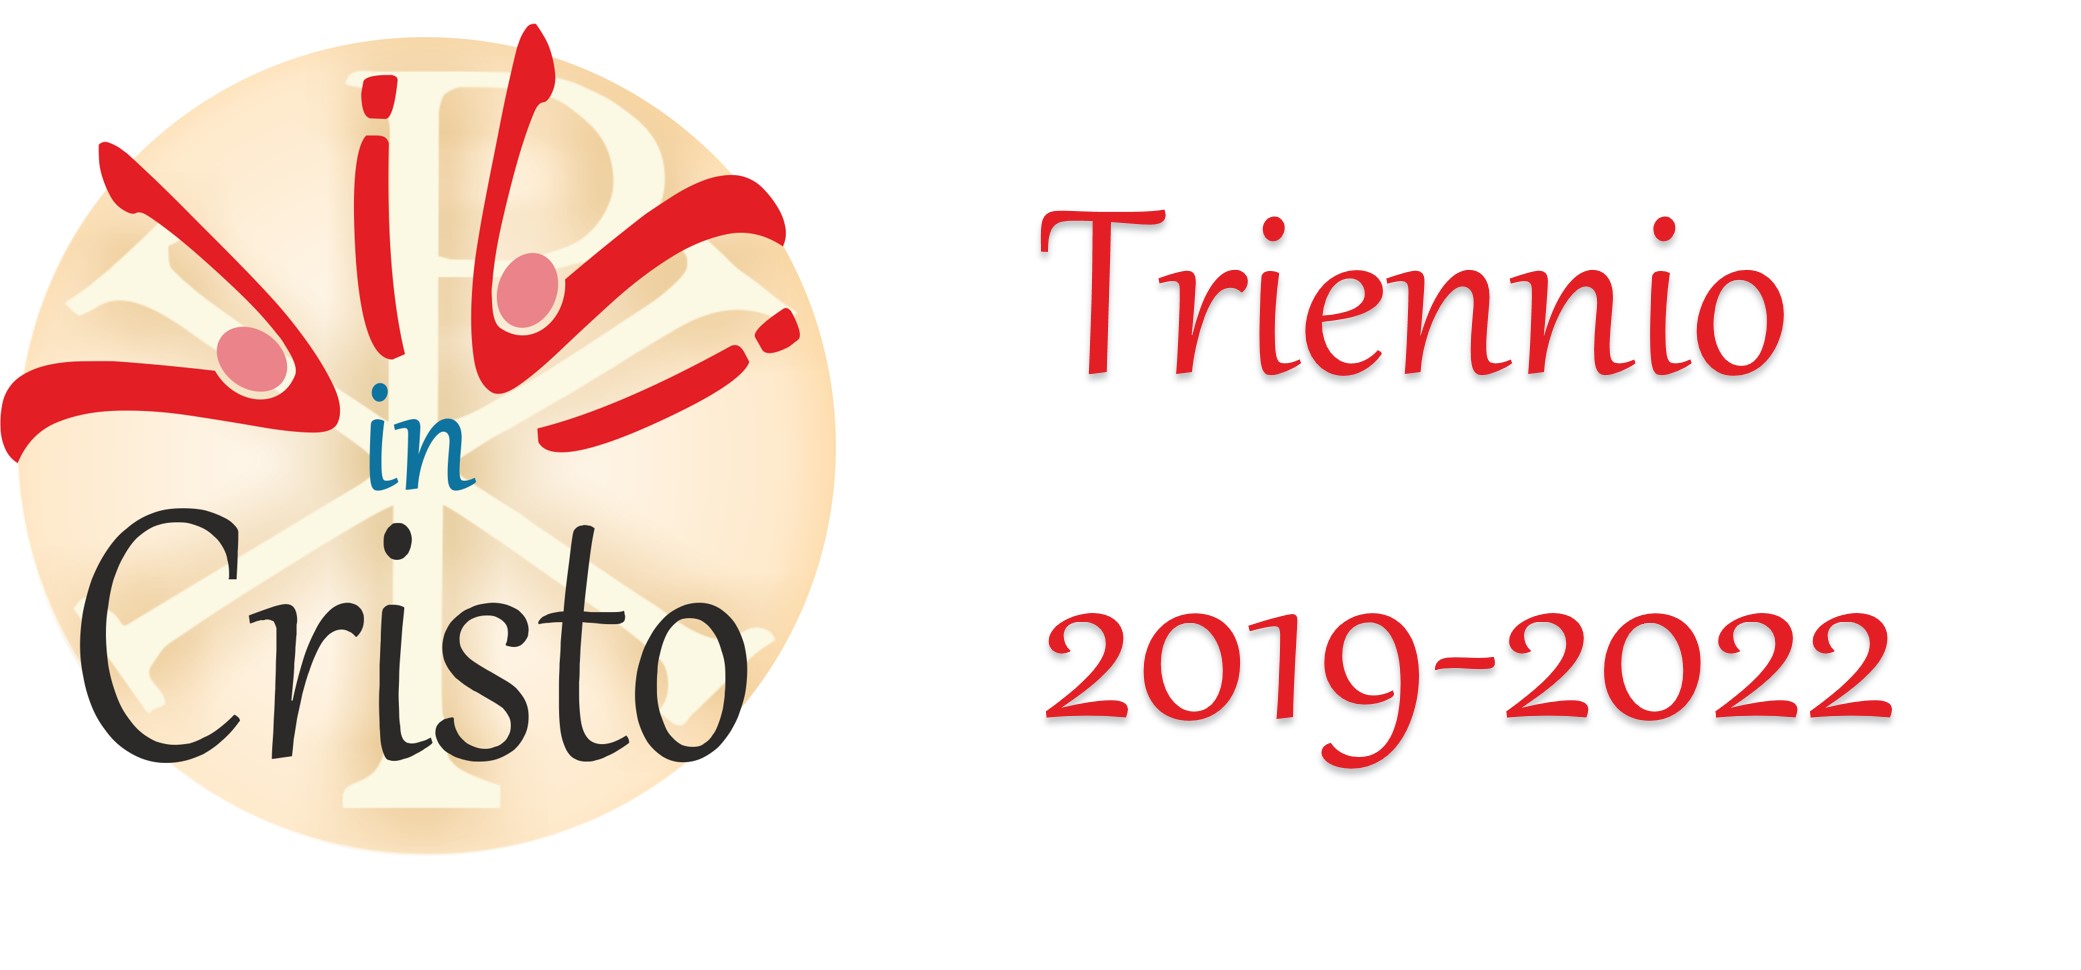 Triennio 2019-2022